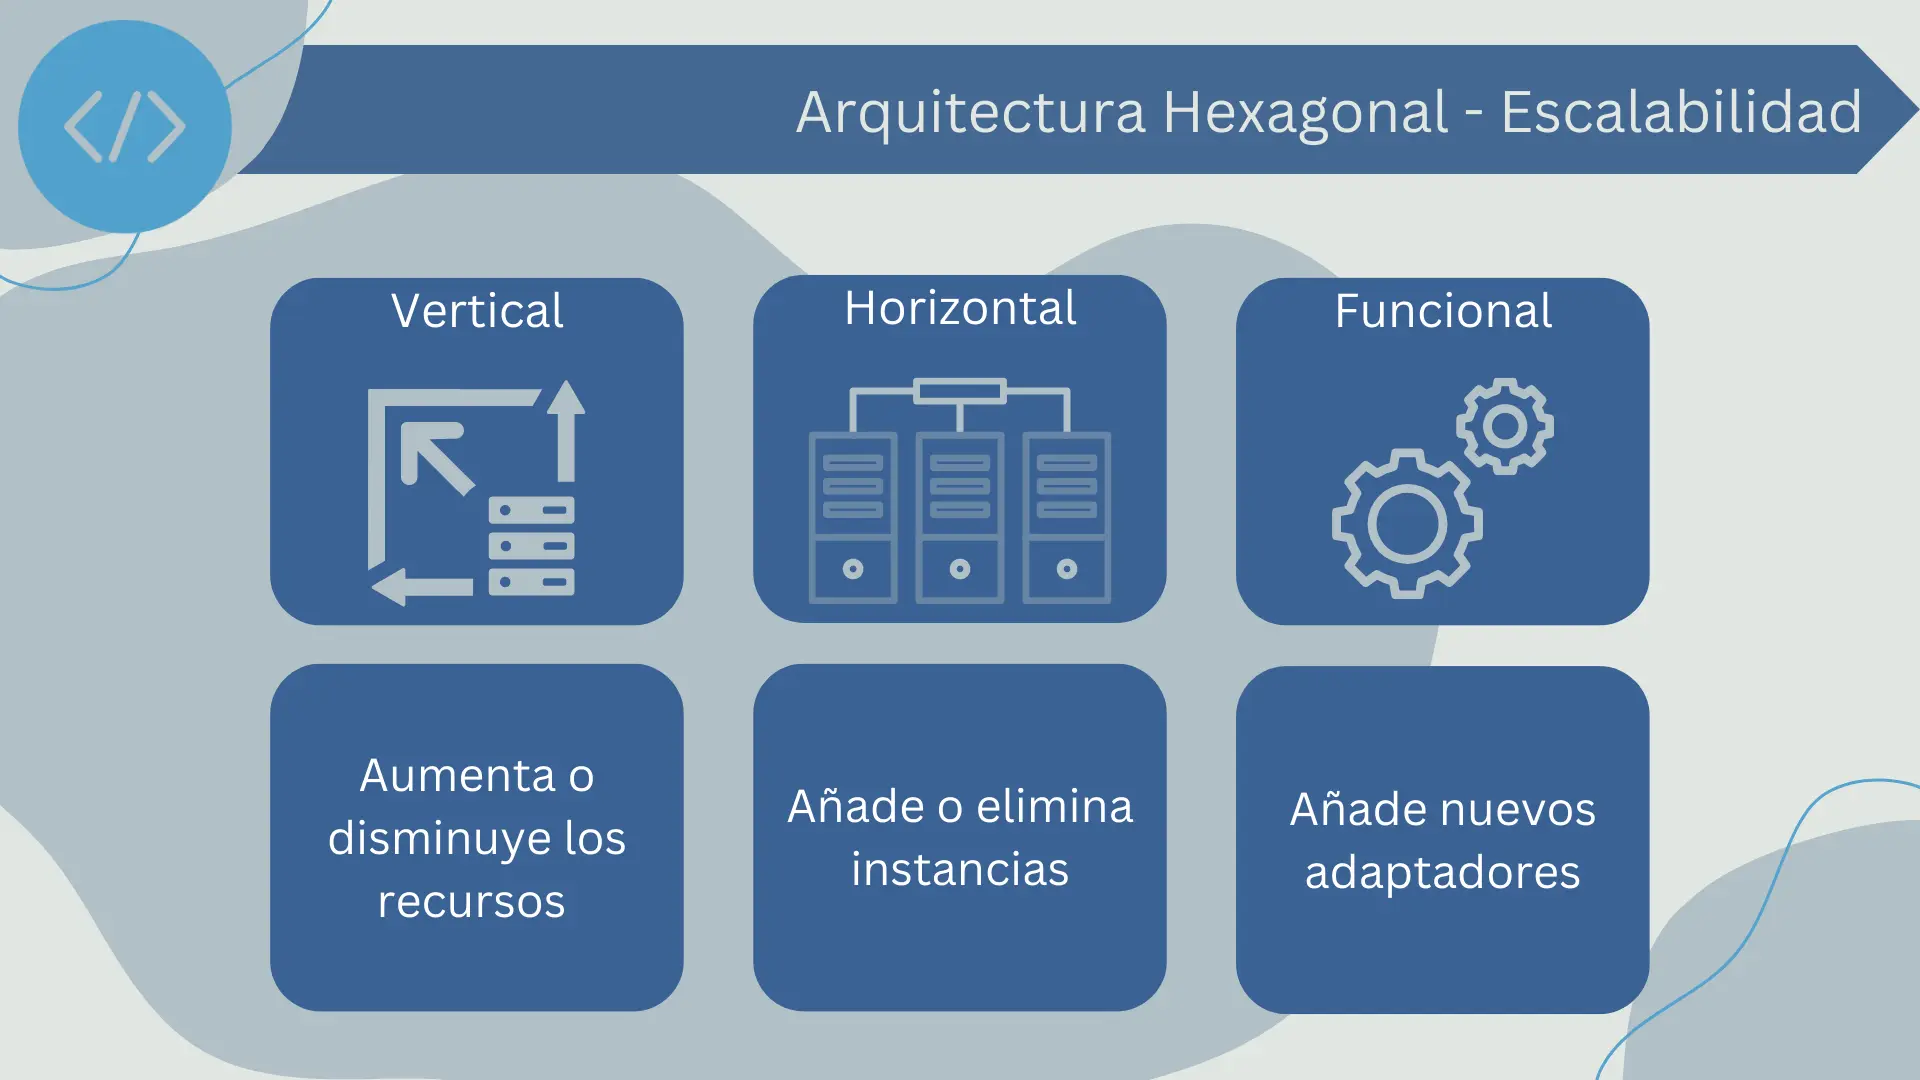 Escalabilidad en la arquitectura hexagonal